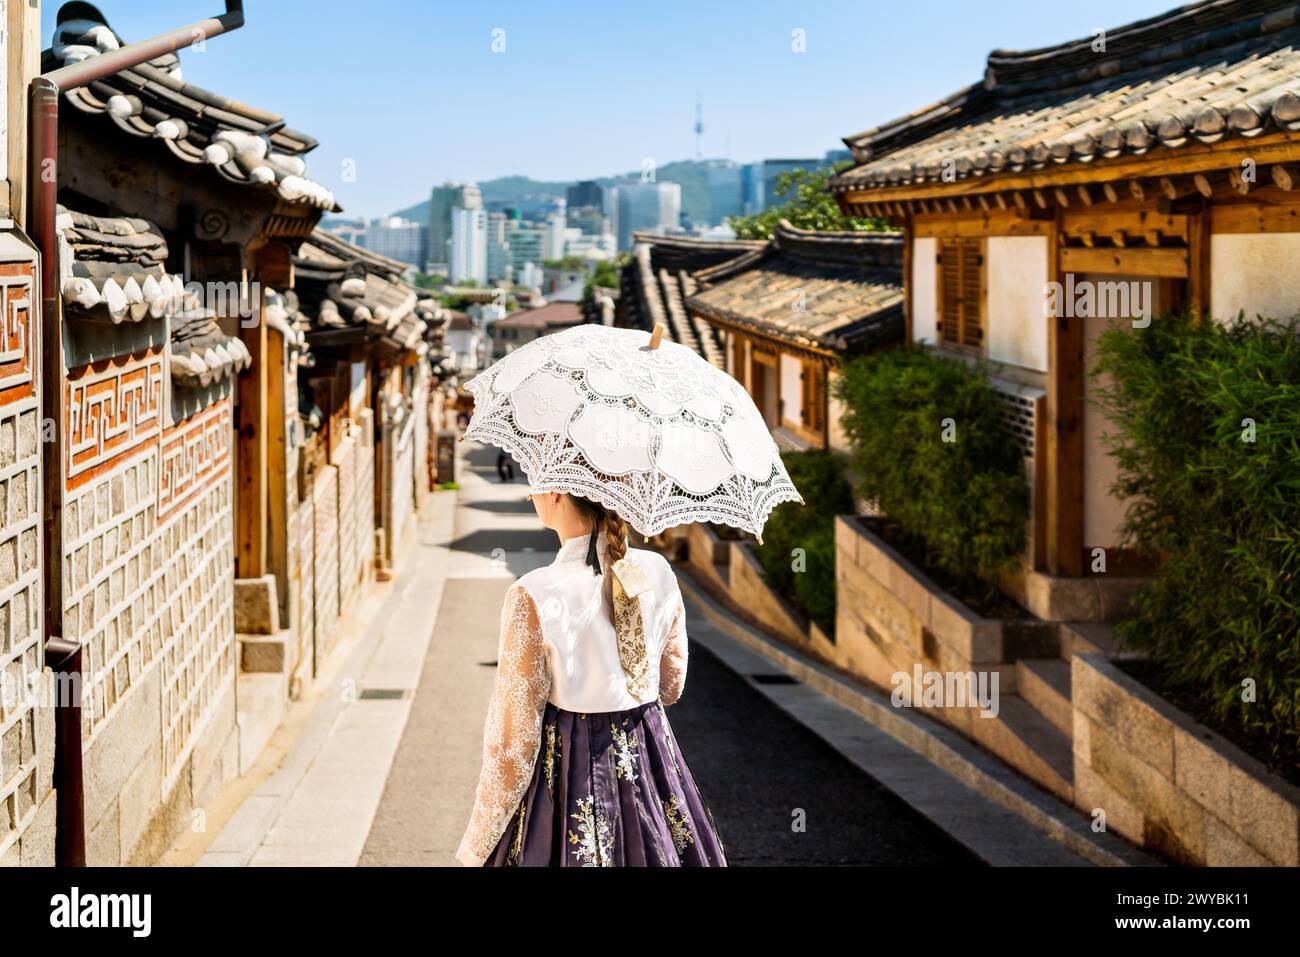 Corée du Sud, Séoul. Femme à hanbok dans le village de Bukchon Hanok. Fille portant une robe et un costume traditionnels. Tradition coréenne. Horizon de la ville. Banque D'Images